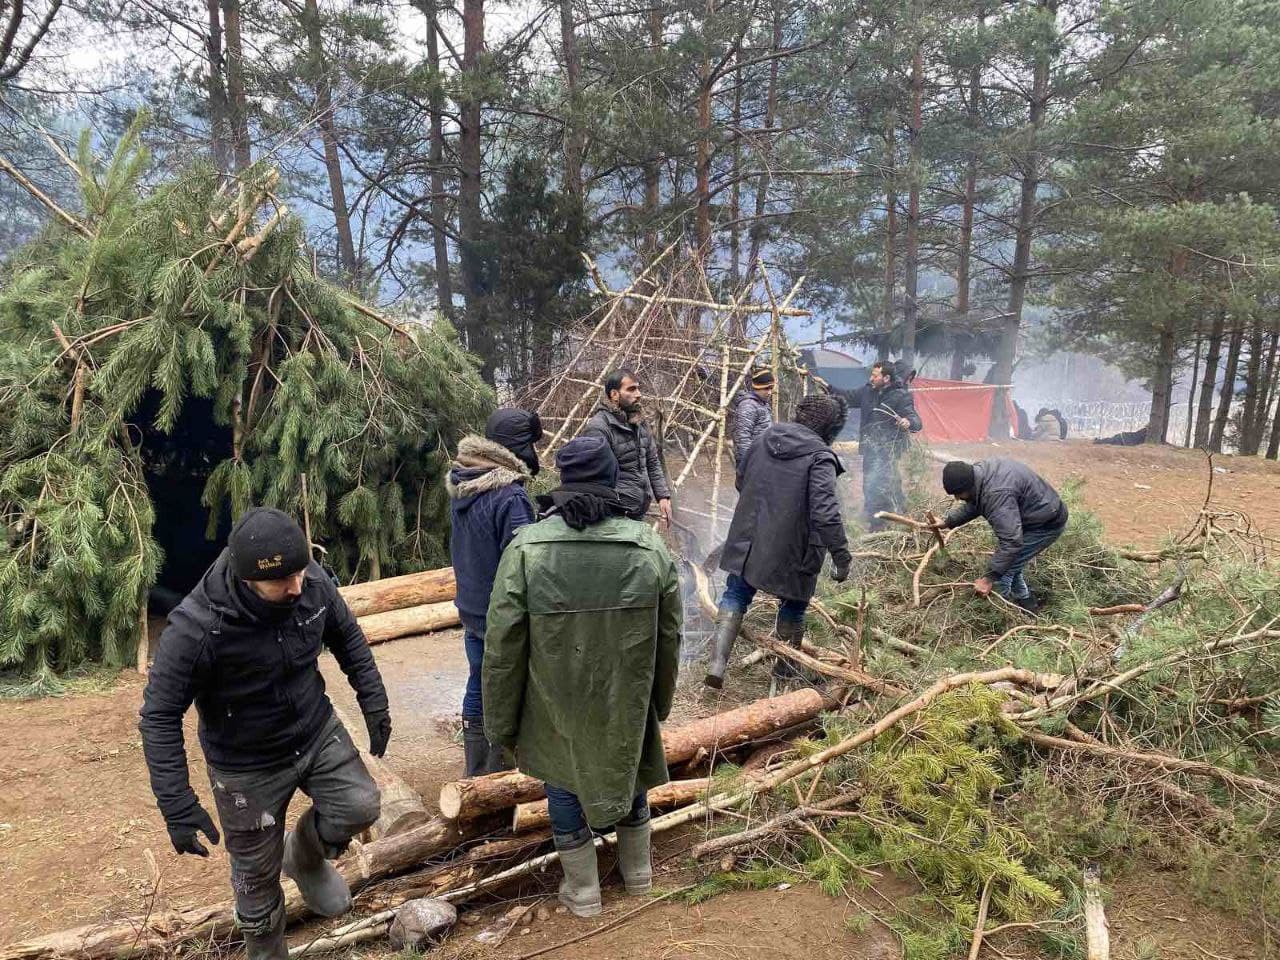  Белорусские власти выдали инструменты беженцам, чтобы они могли пилить дрова. Фото: Андрей Павловский.